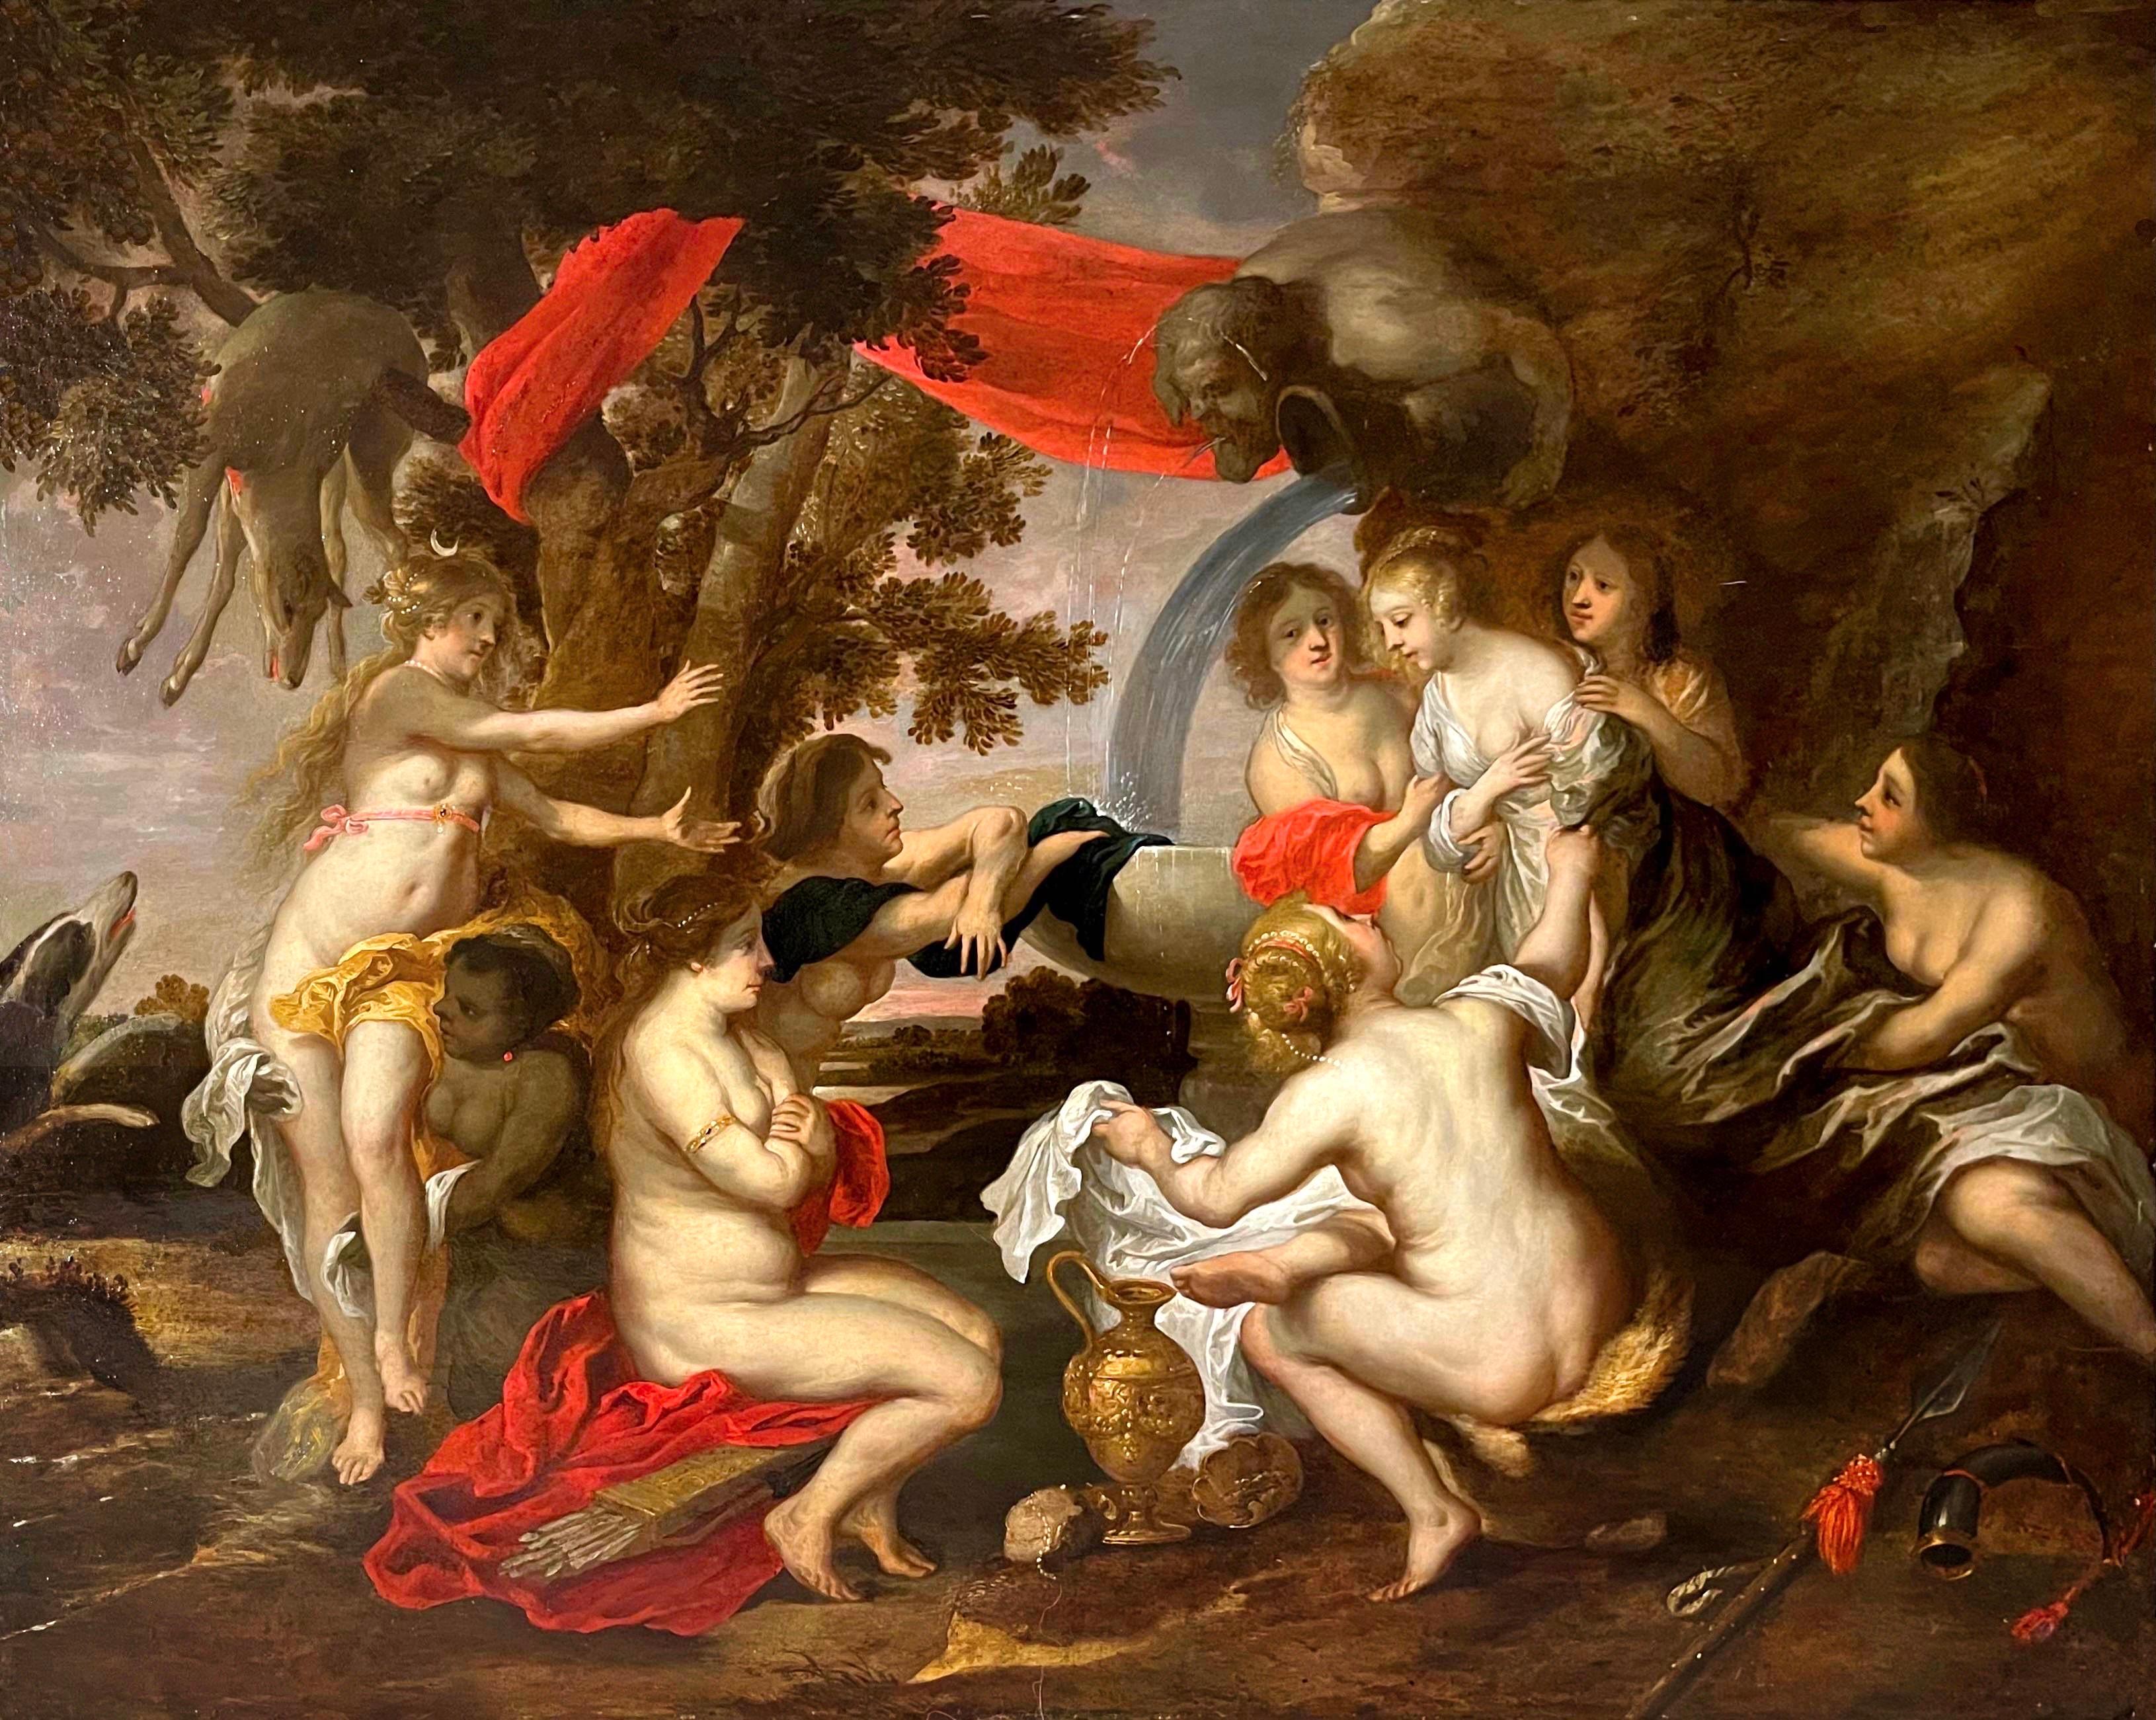 Victor Wolfvoet the Younger Portrait Painting – Großes altmeisterliches flämisches Gemälde aus dem 17. Jahrhundert - Diana und Kallisto - Rubens